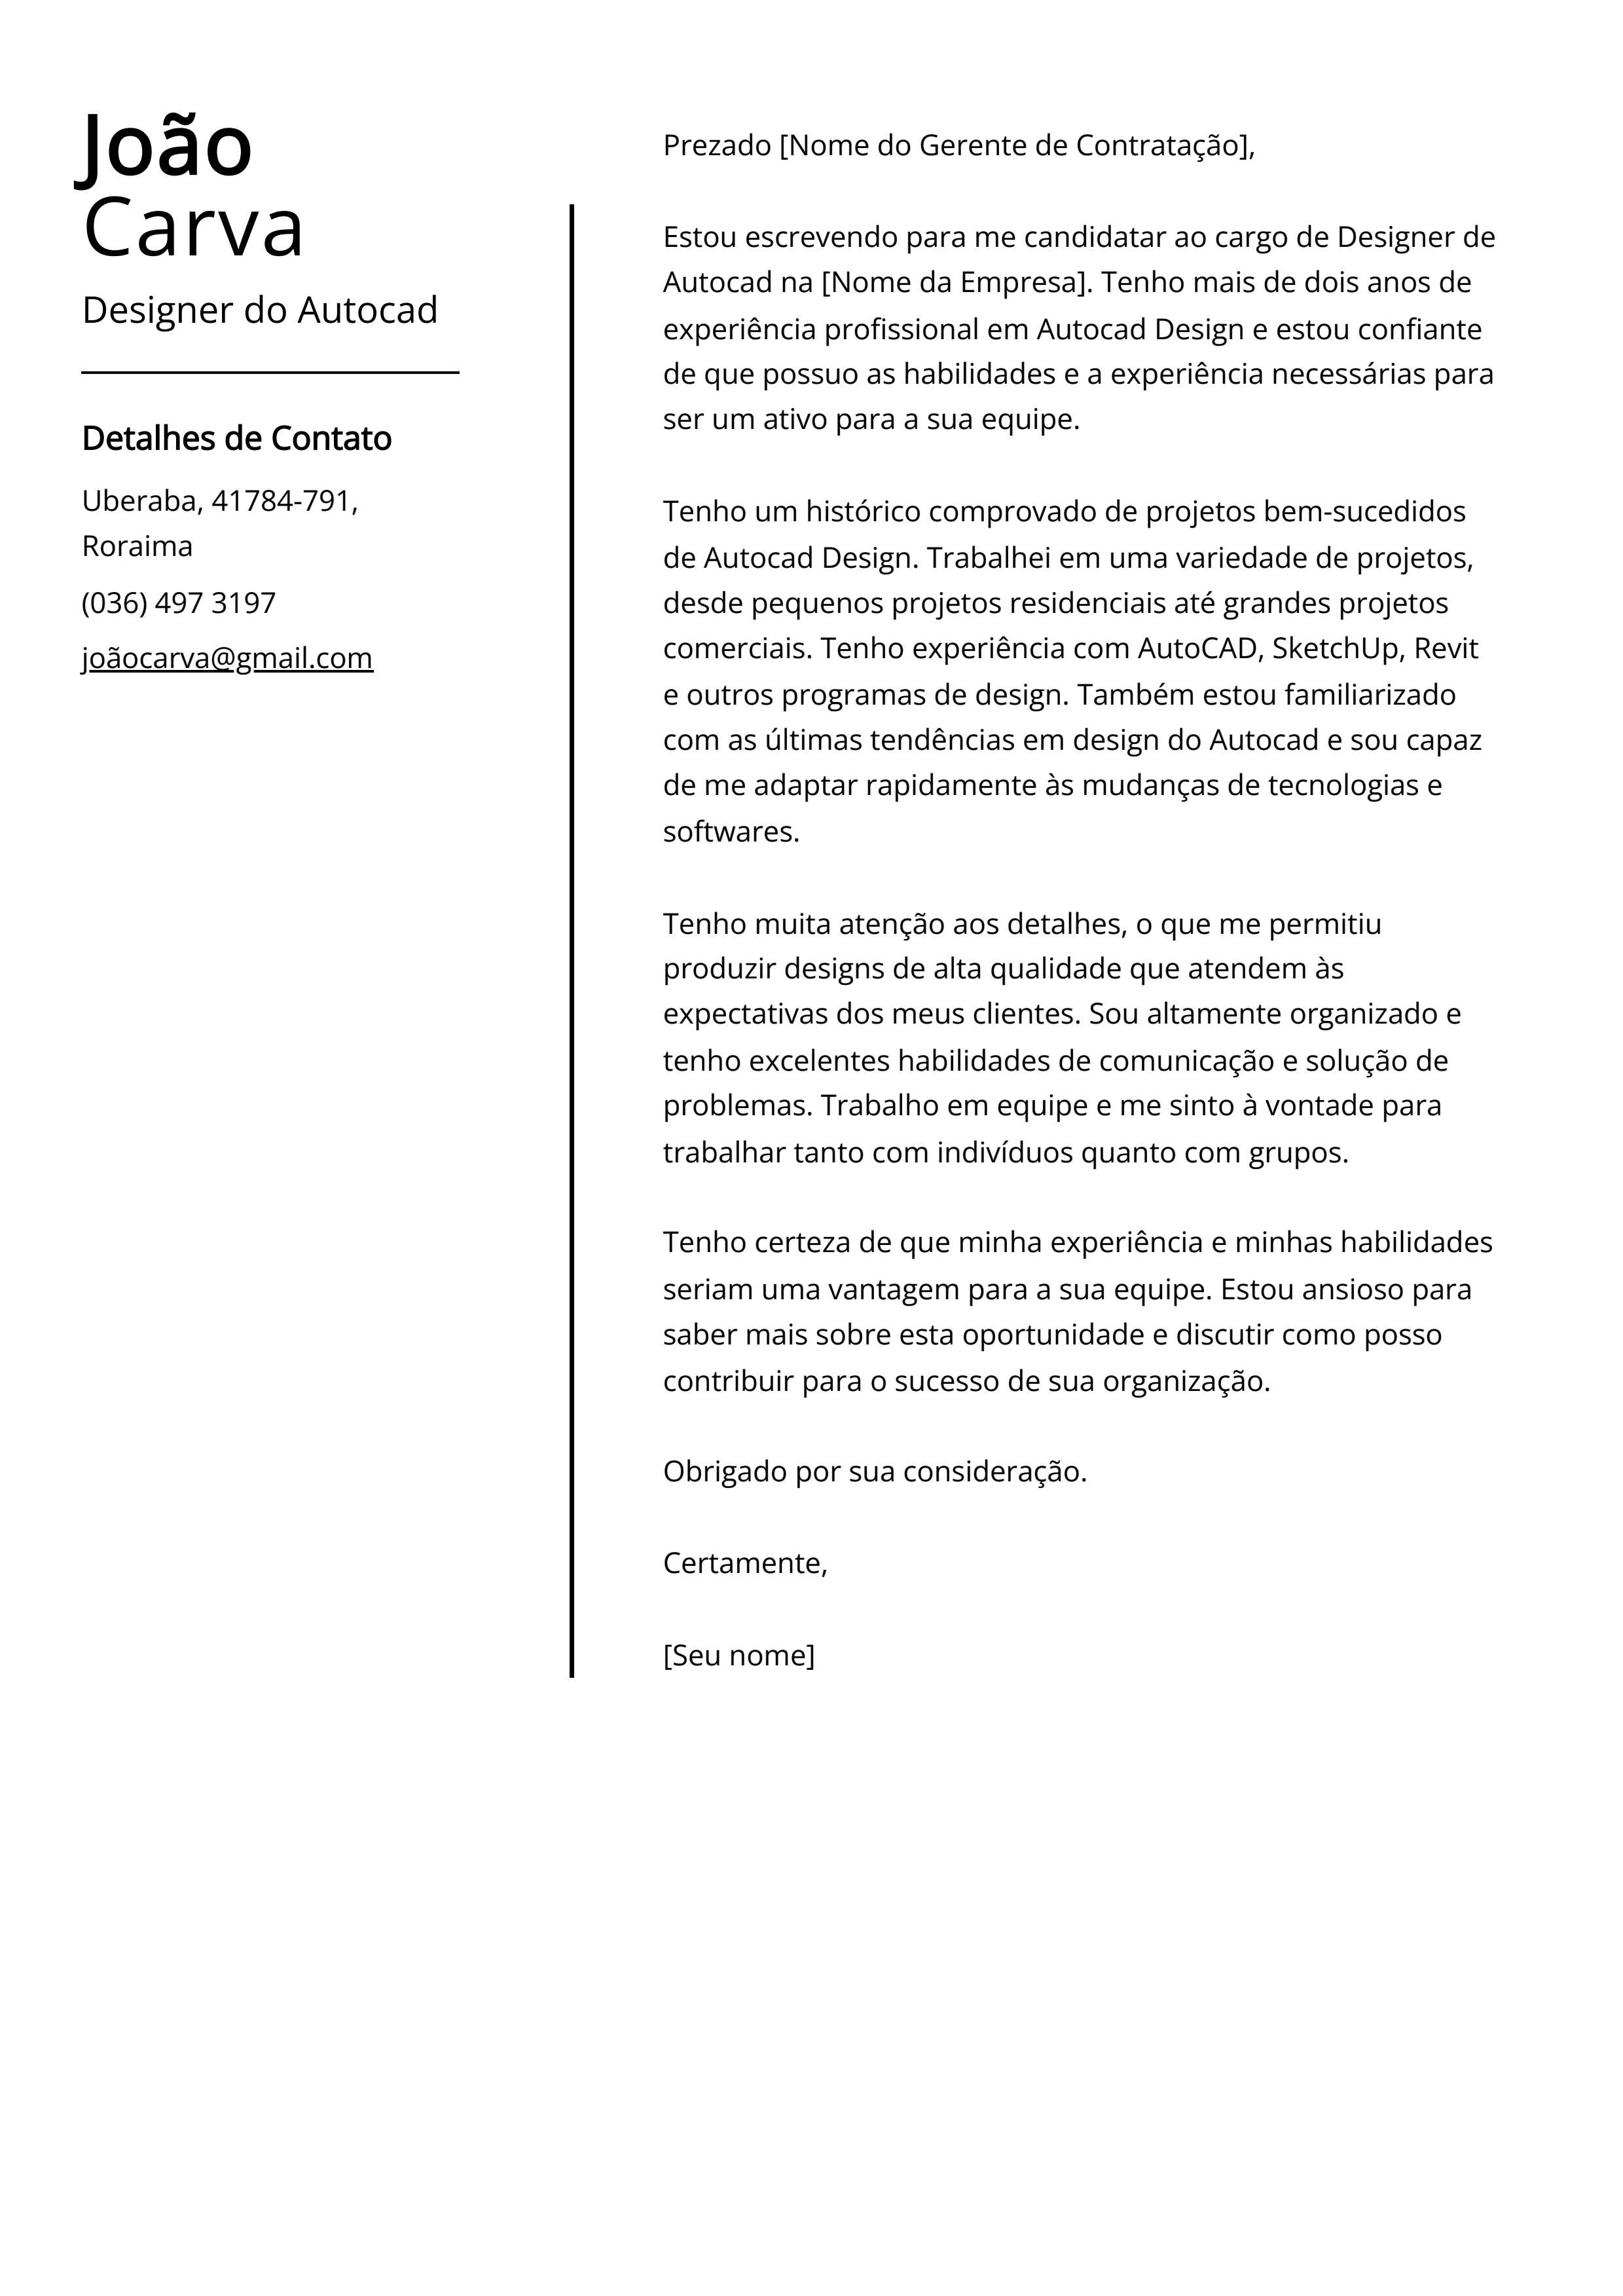 Exemplo de carta de apresentação de designer do Autocad